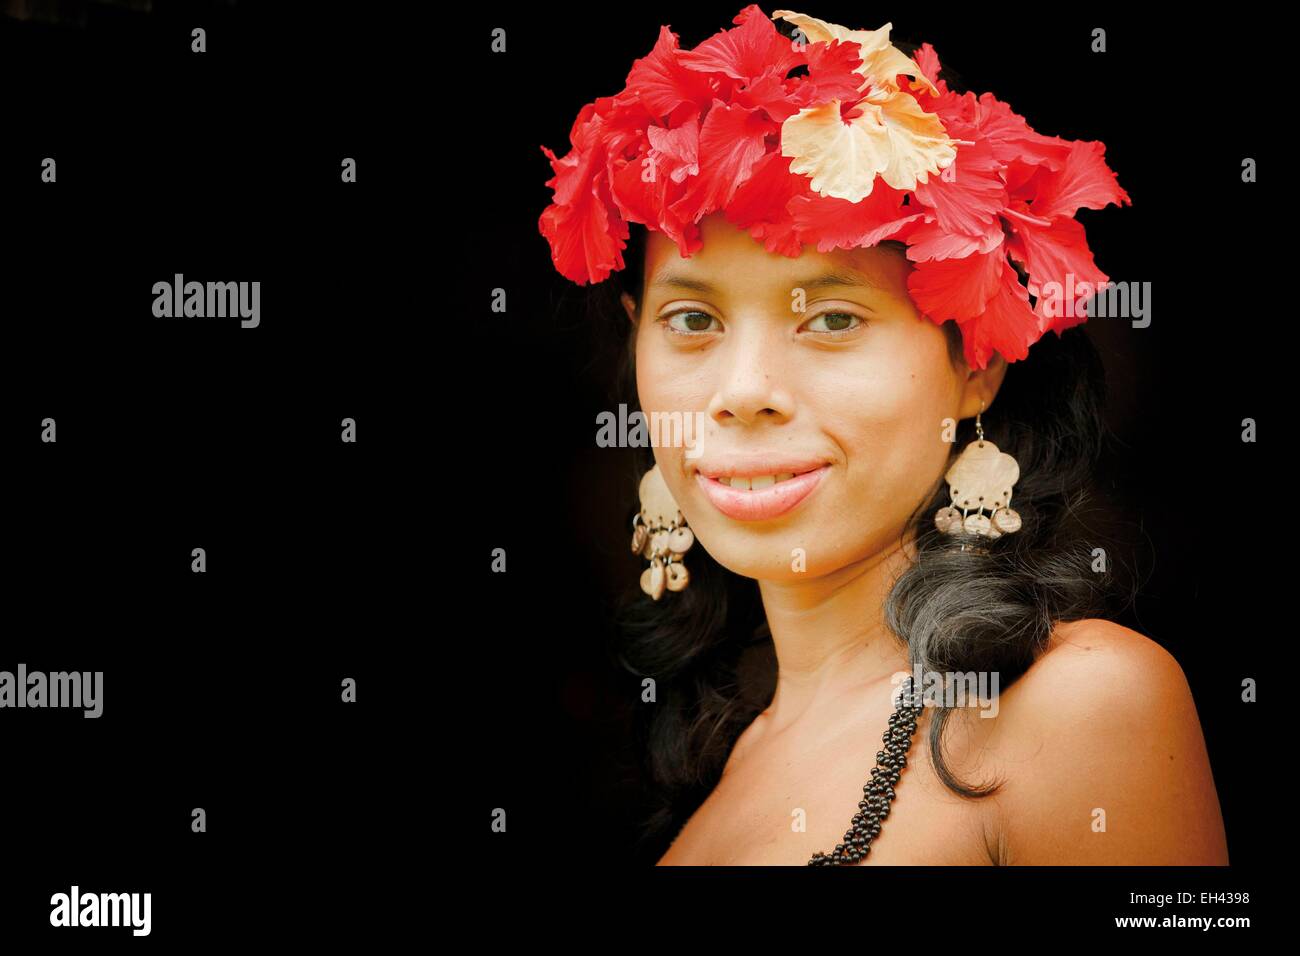 Panama, provincia di Darien, Parco Nazionale del Darién, classificato come patrimonio mondiale dall UNESCO, Embera comunità indigena, ritratto di una giovane ragazza nativa Embera Foto Stock